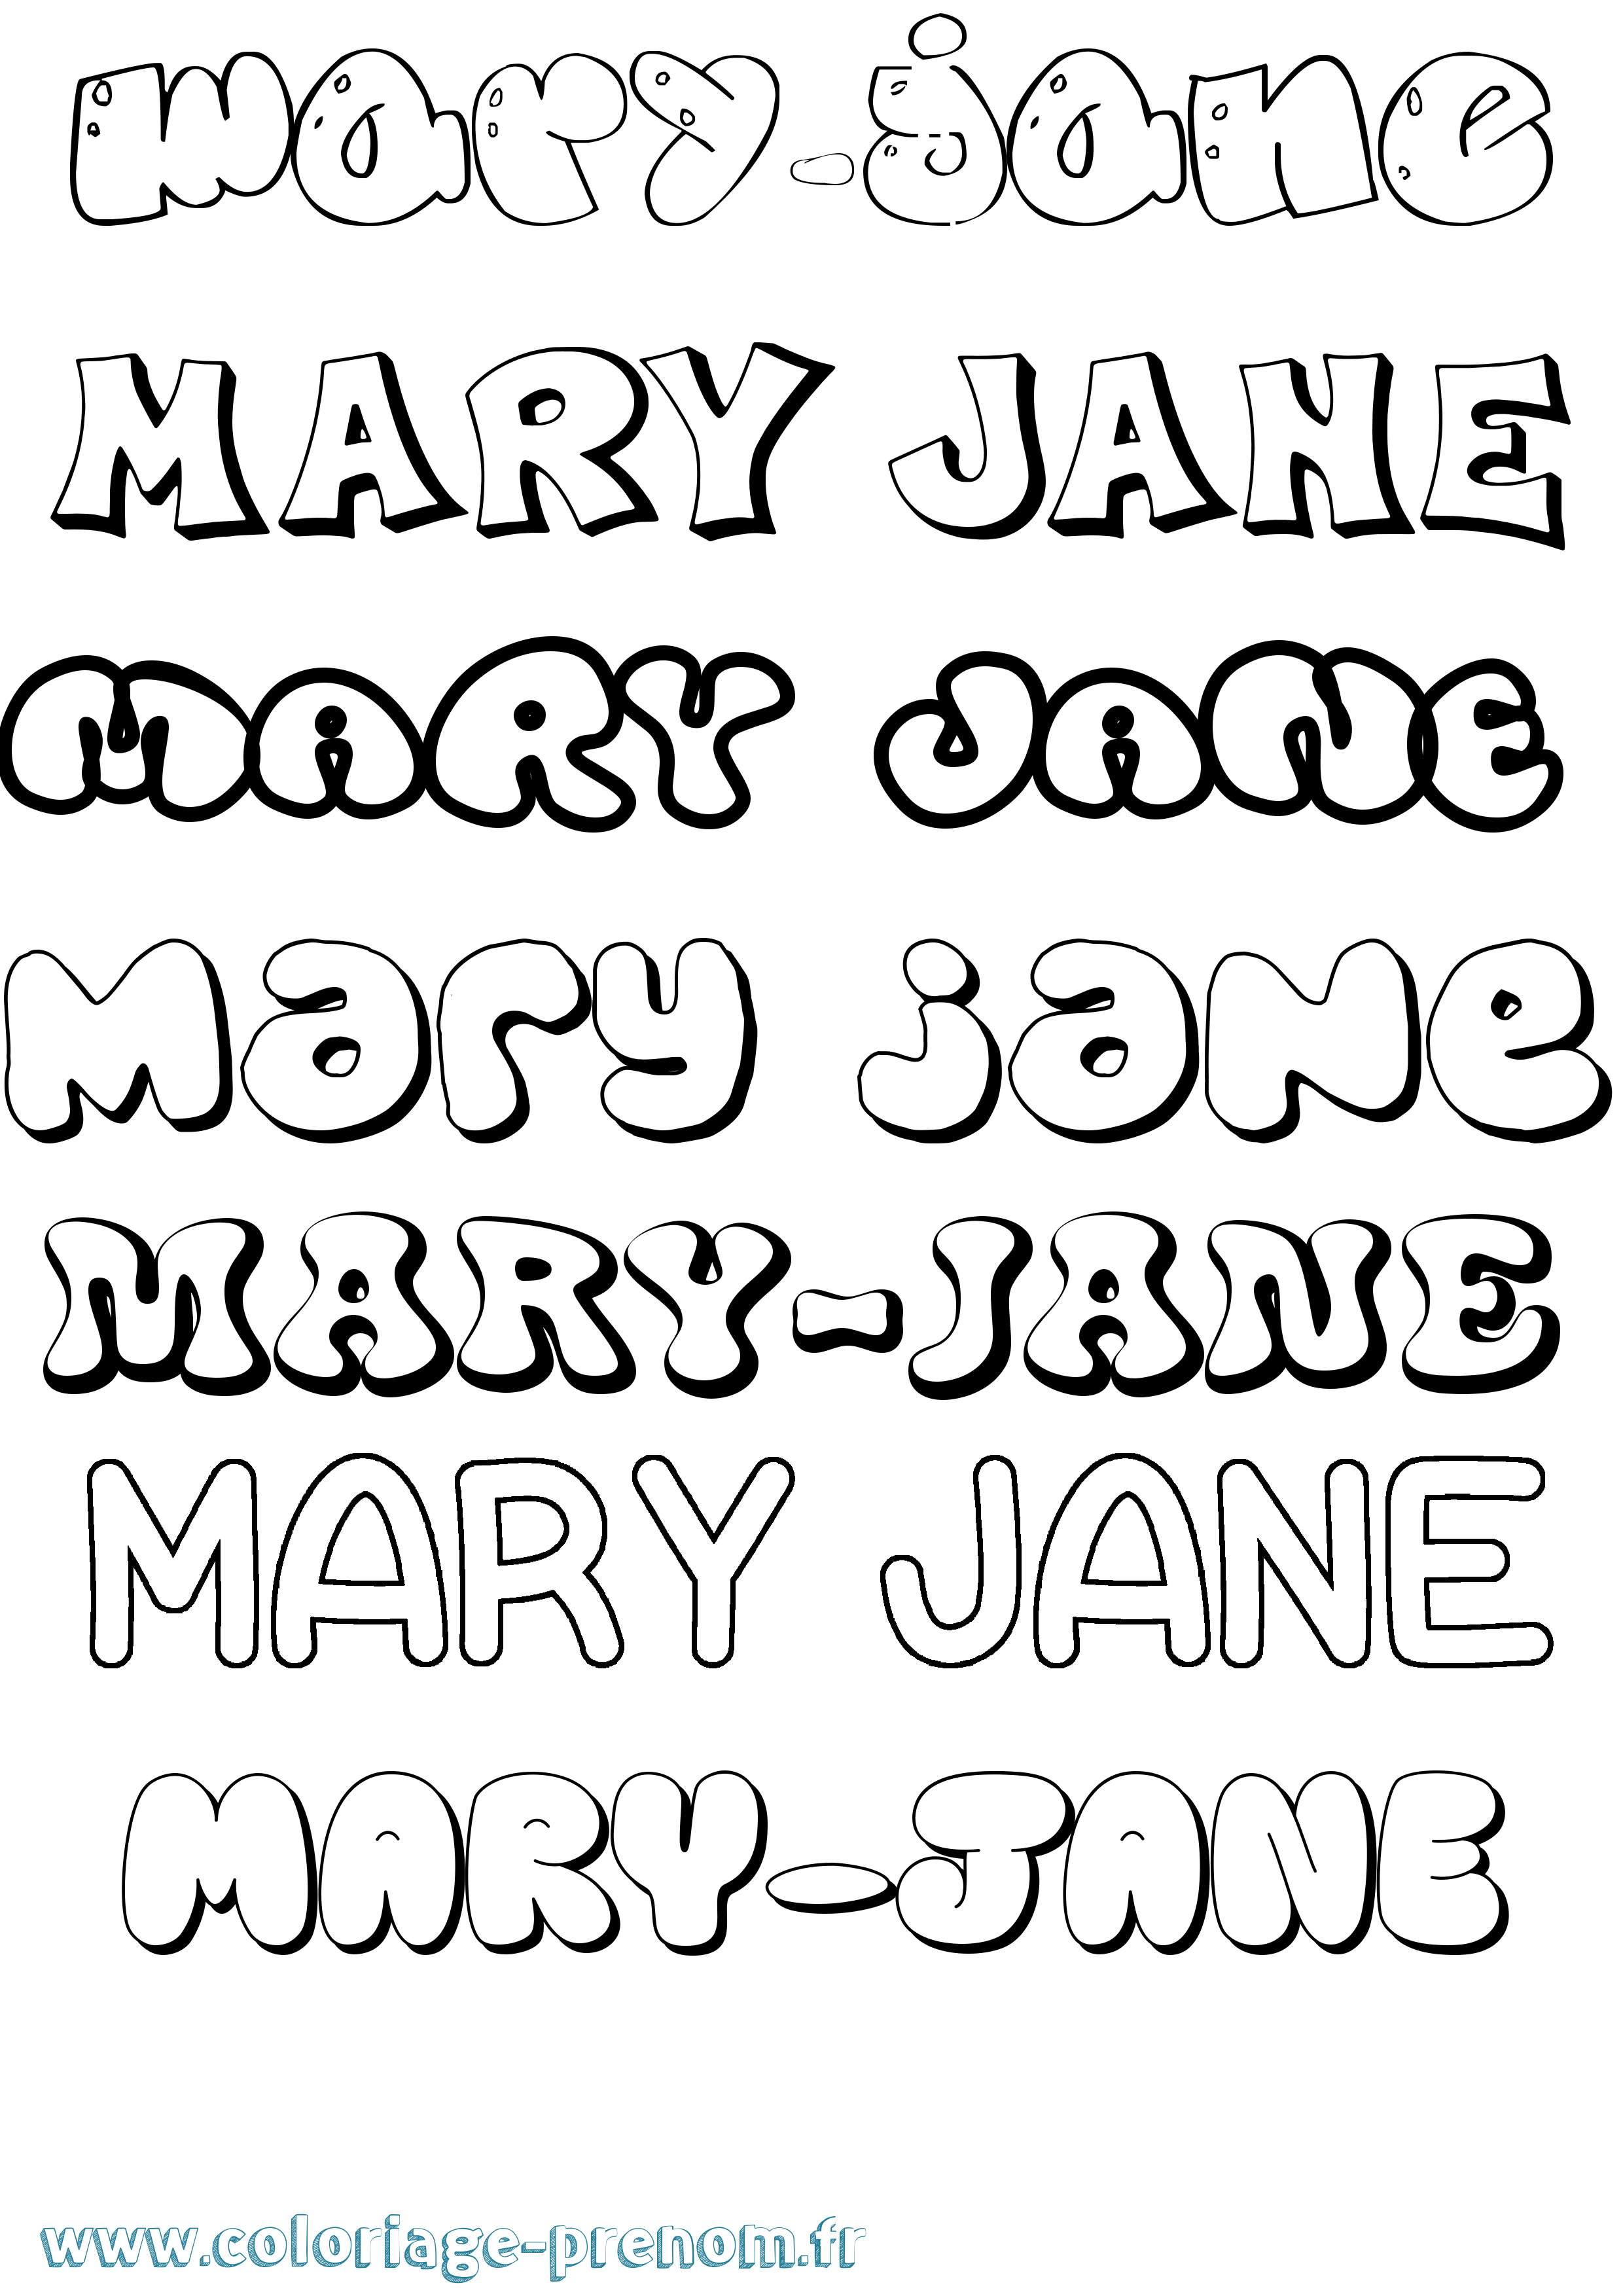 Coloriage prénom Mary-Jane Bubble